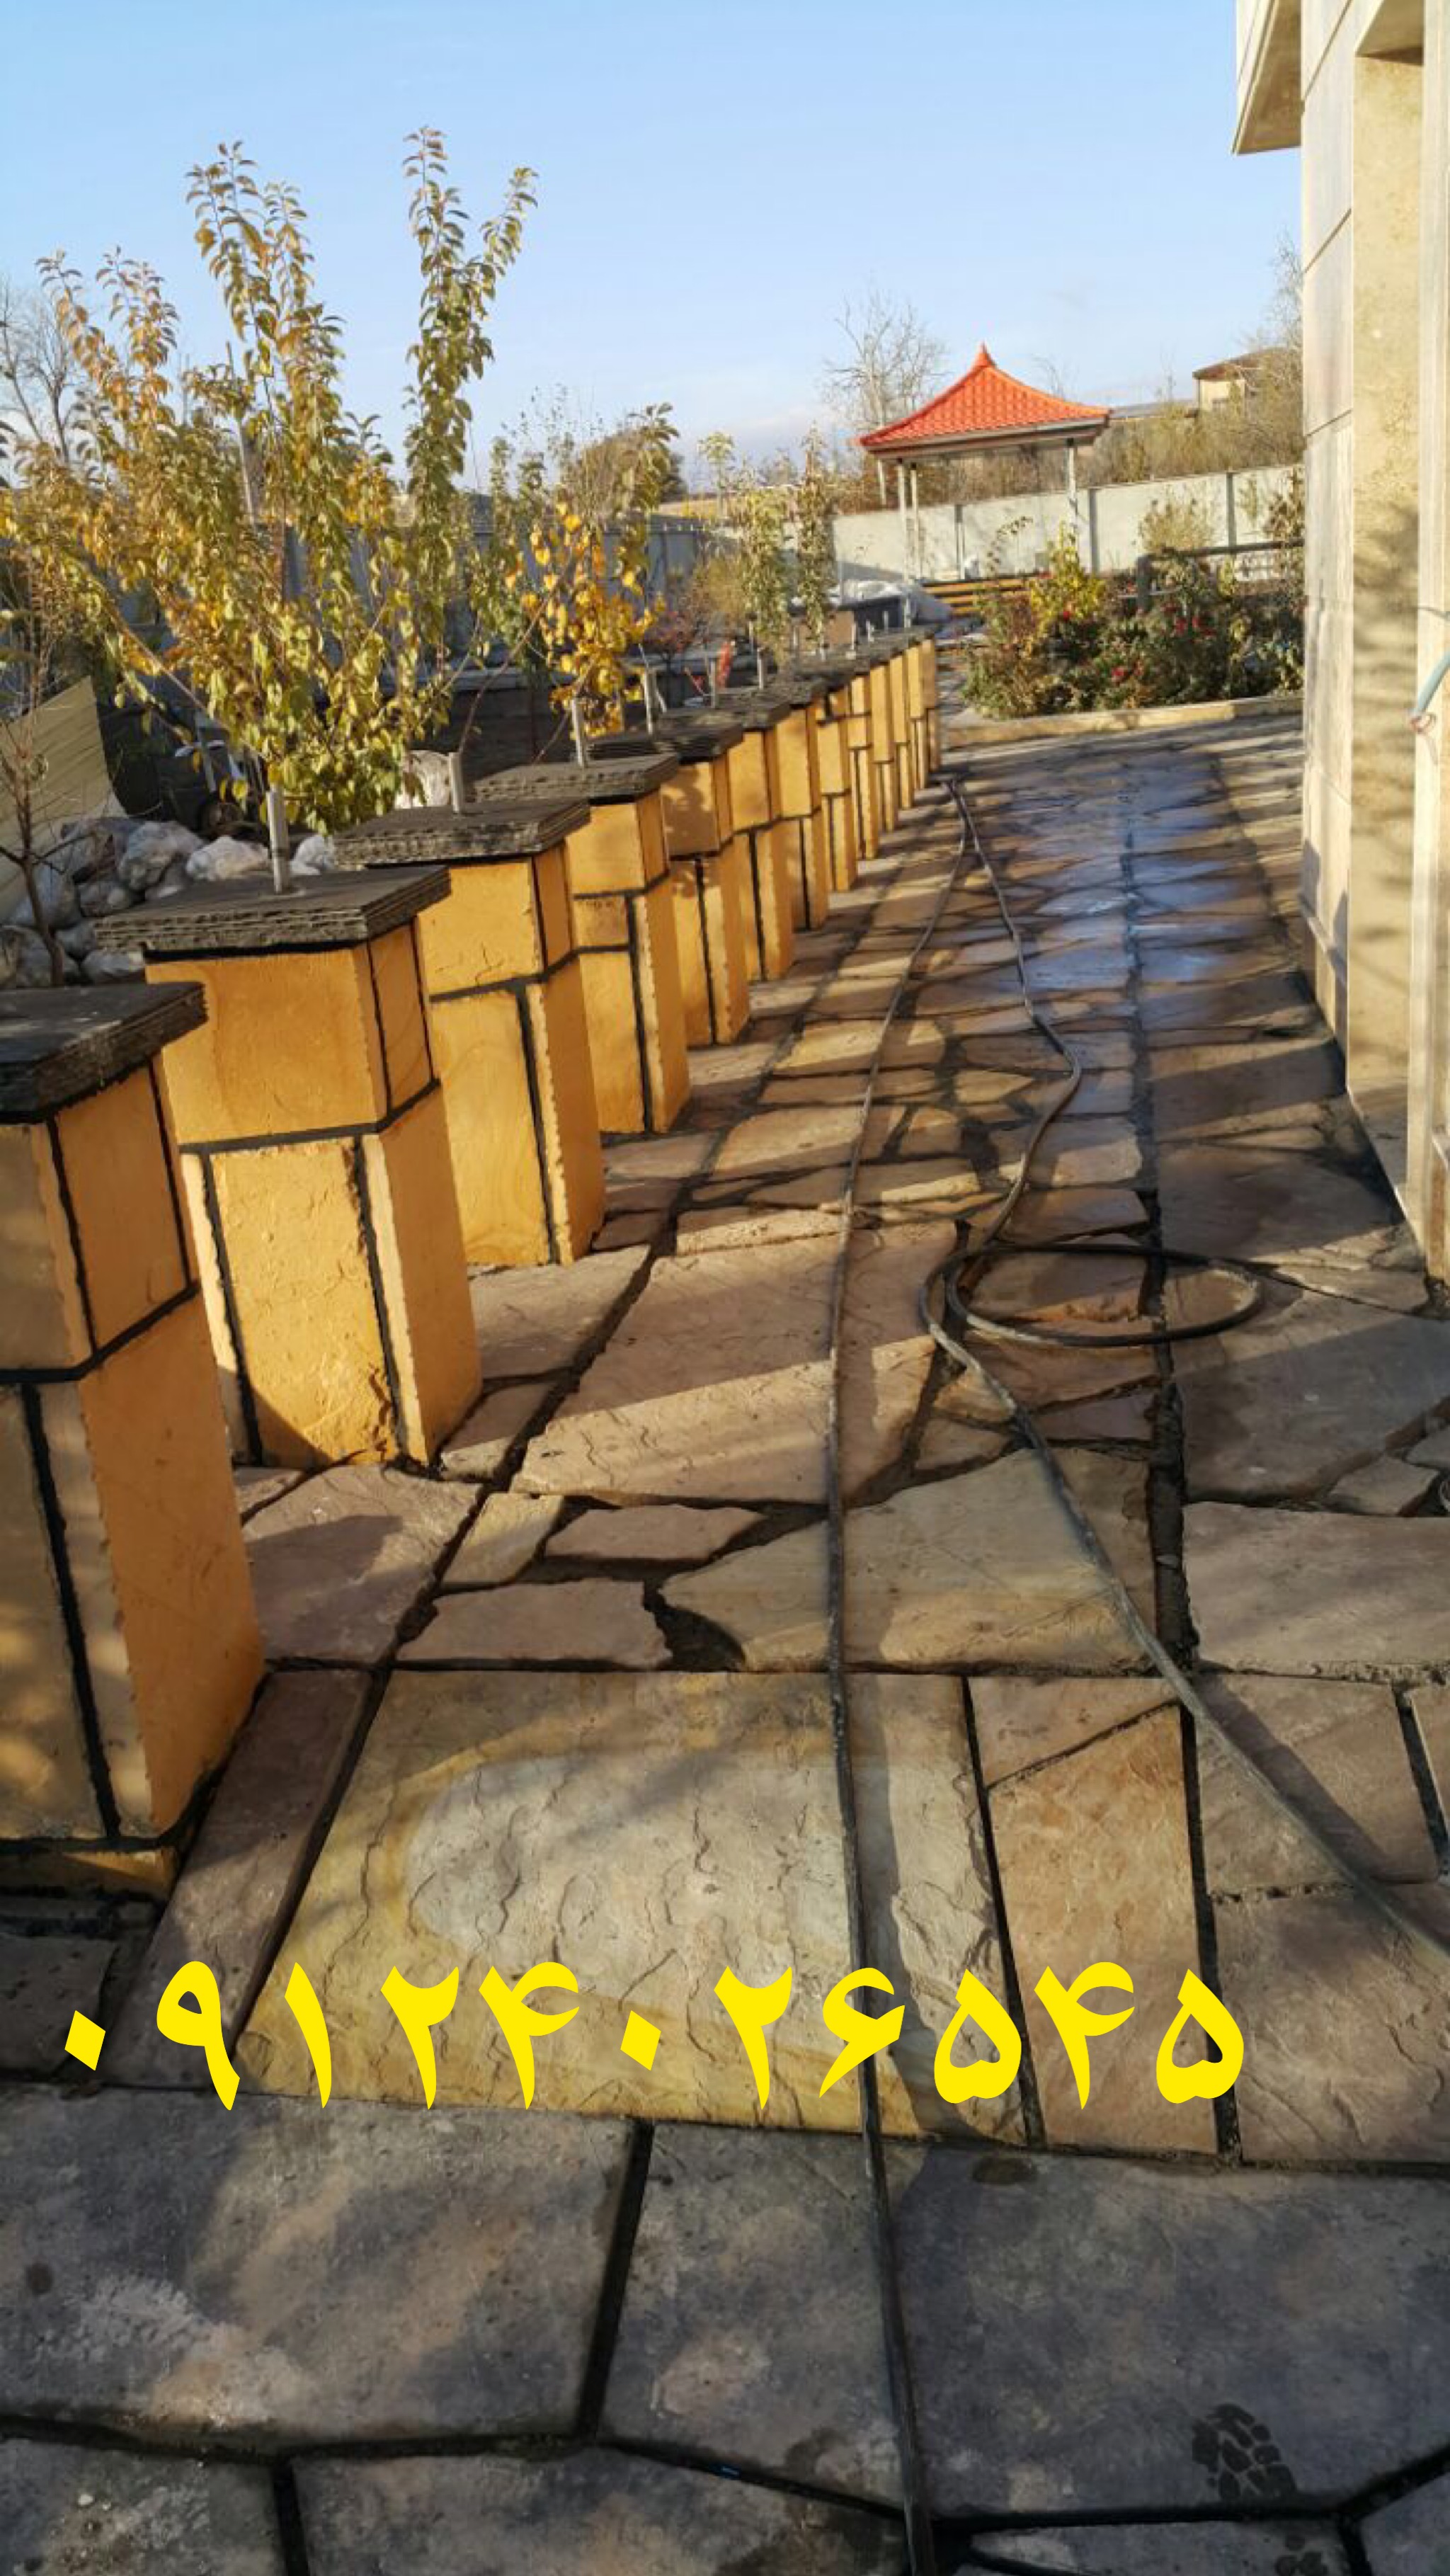 اجرای سنگ لاشه و سنگ مالون برای کف سازی و ستون چه های که بر روی آن چراغ ها قرار میگیرد برای زیبای و روشنای محوطه باغ ویلا بسیار ایده ای خوبی خواهد بود 